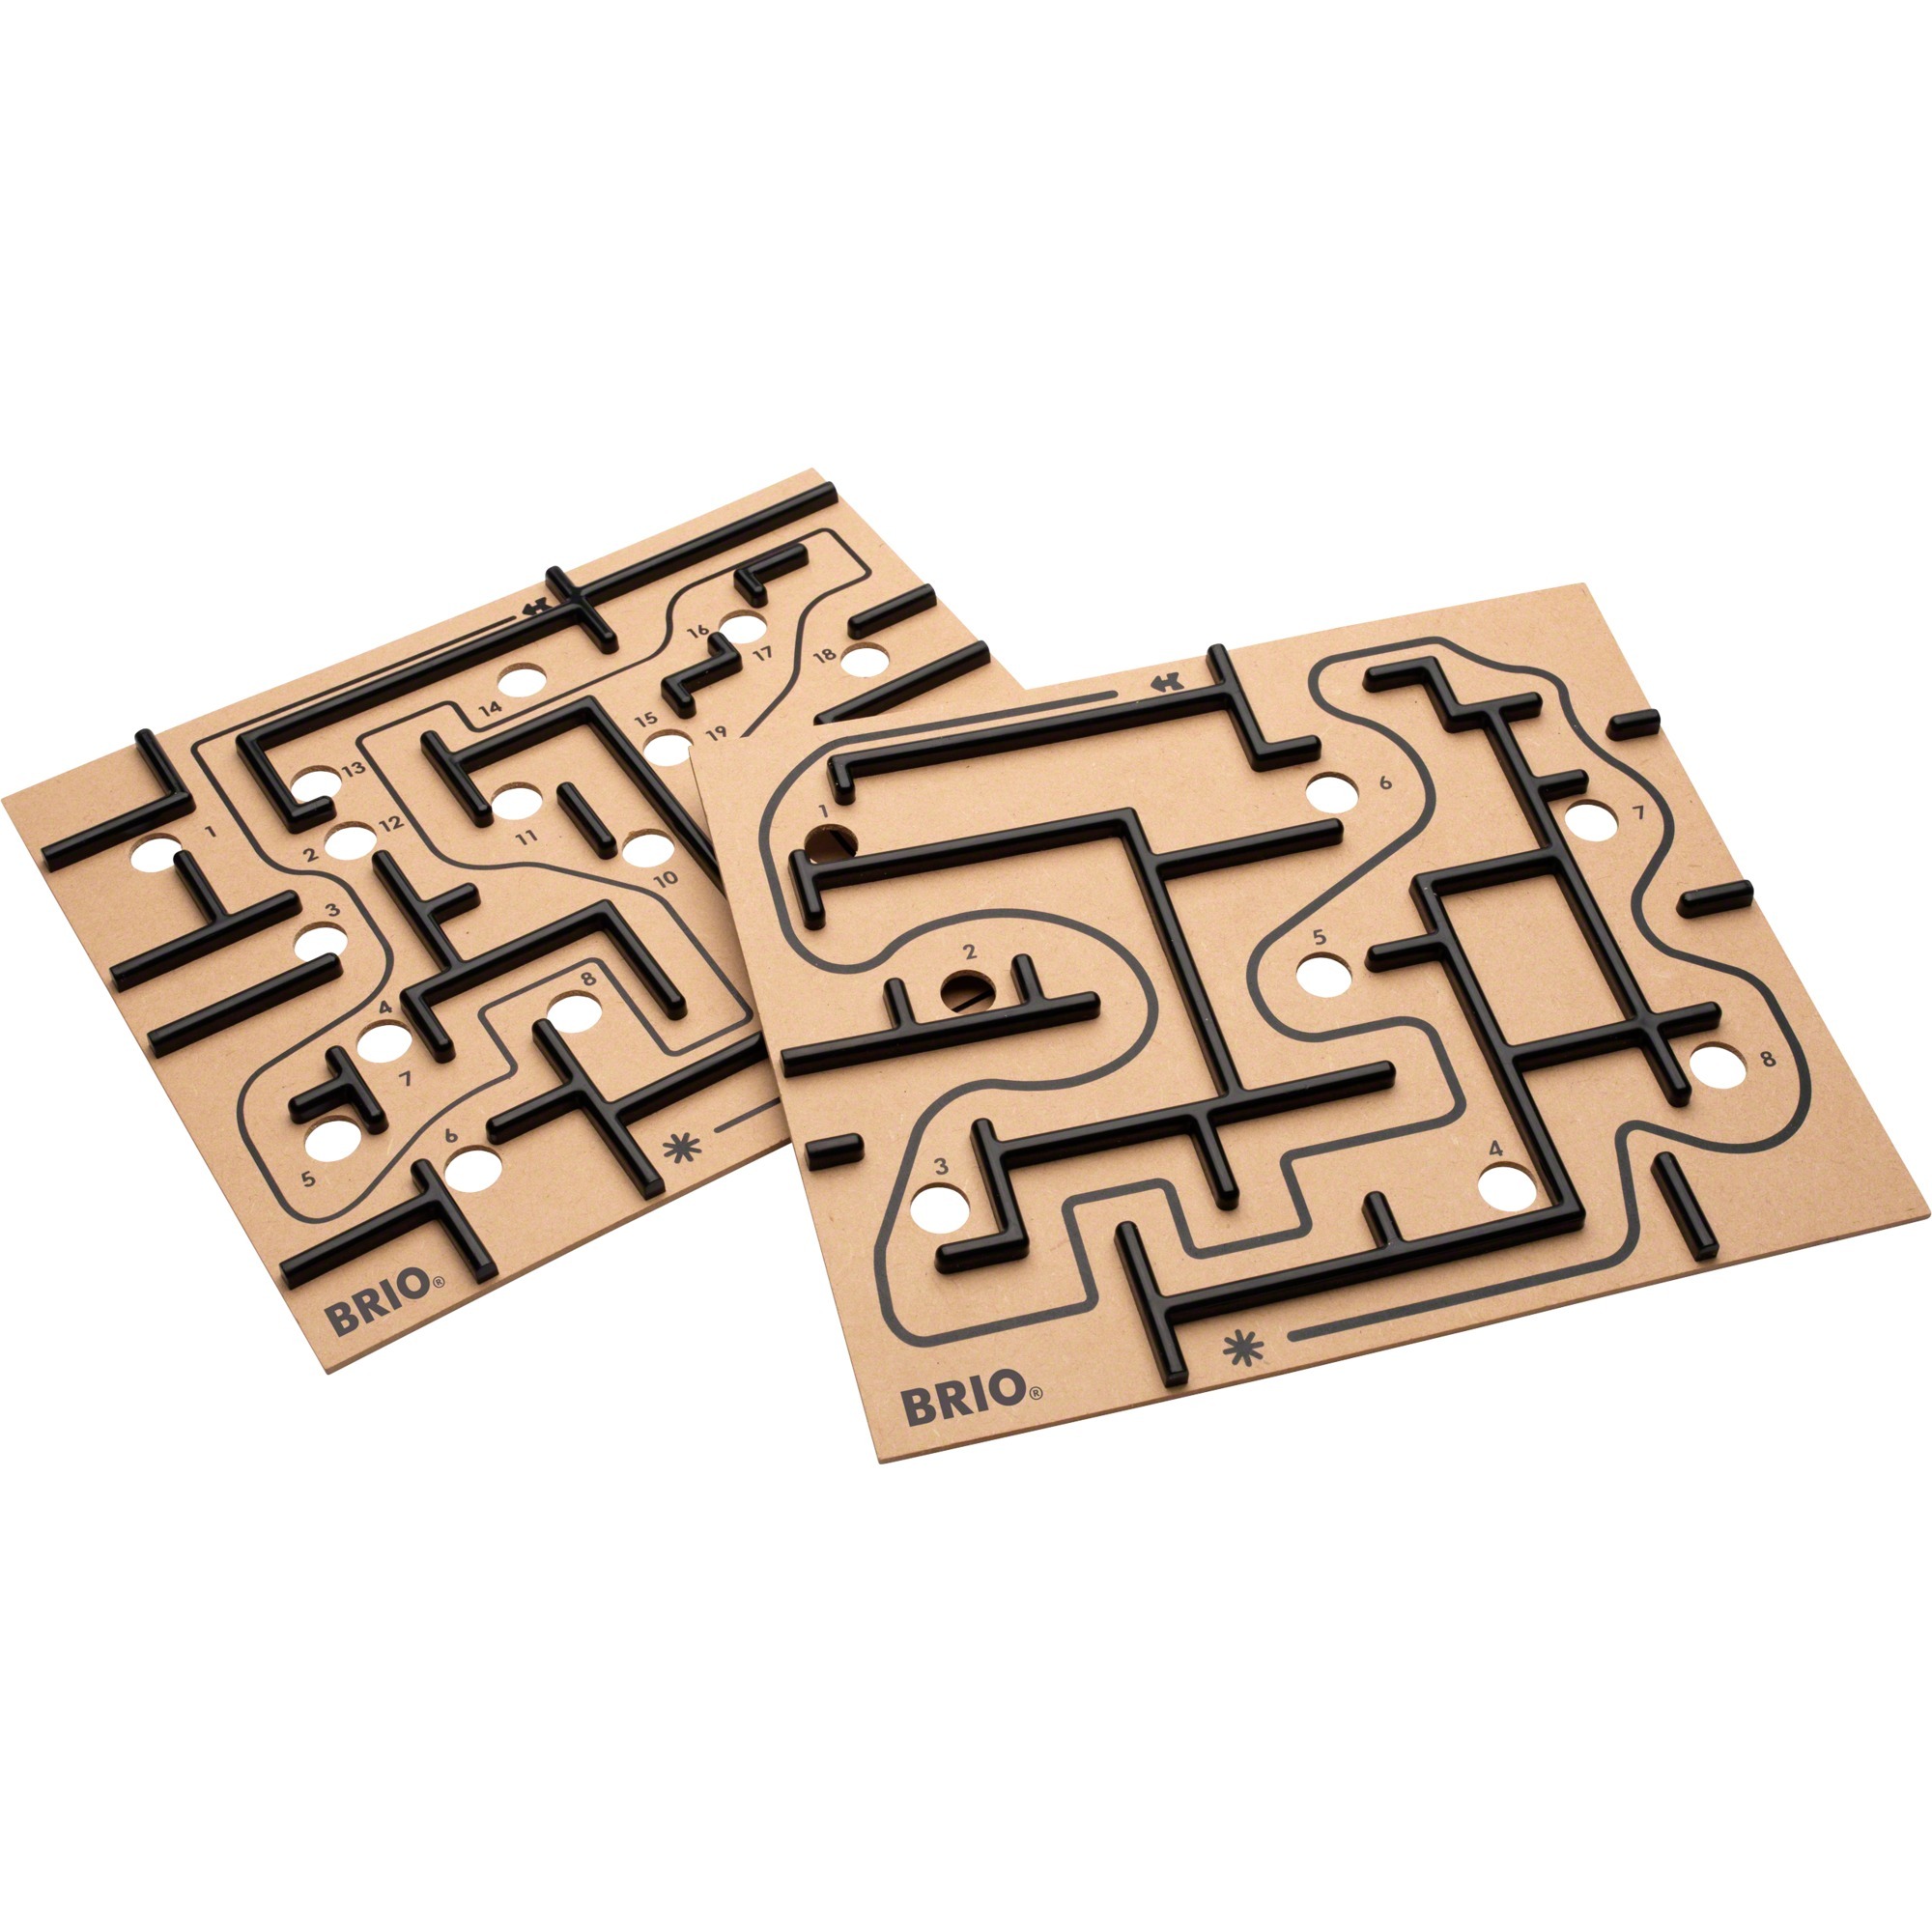 Image of Alternate - Labyrinth Ersatzplatten, Geschicklichkeitsspiel online einkaufen bei Alternate